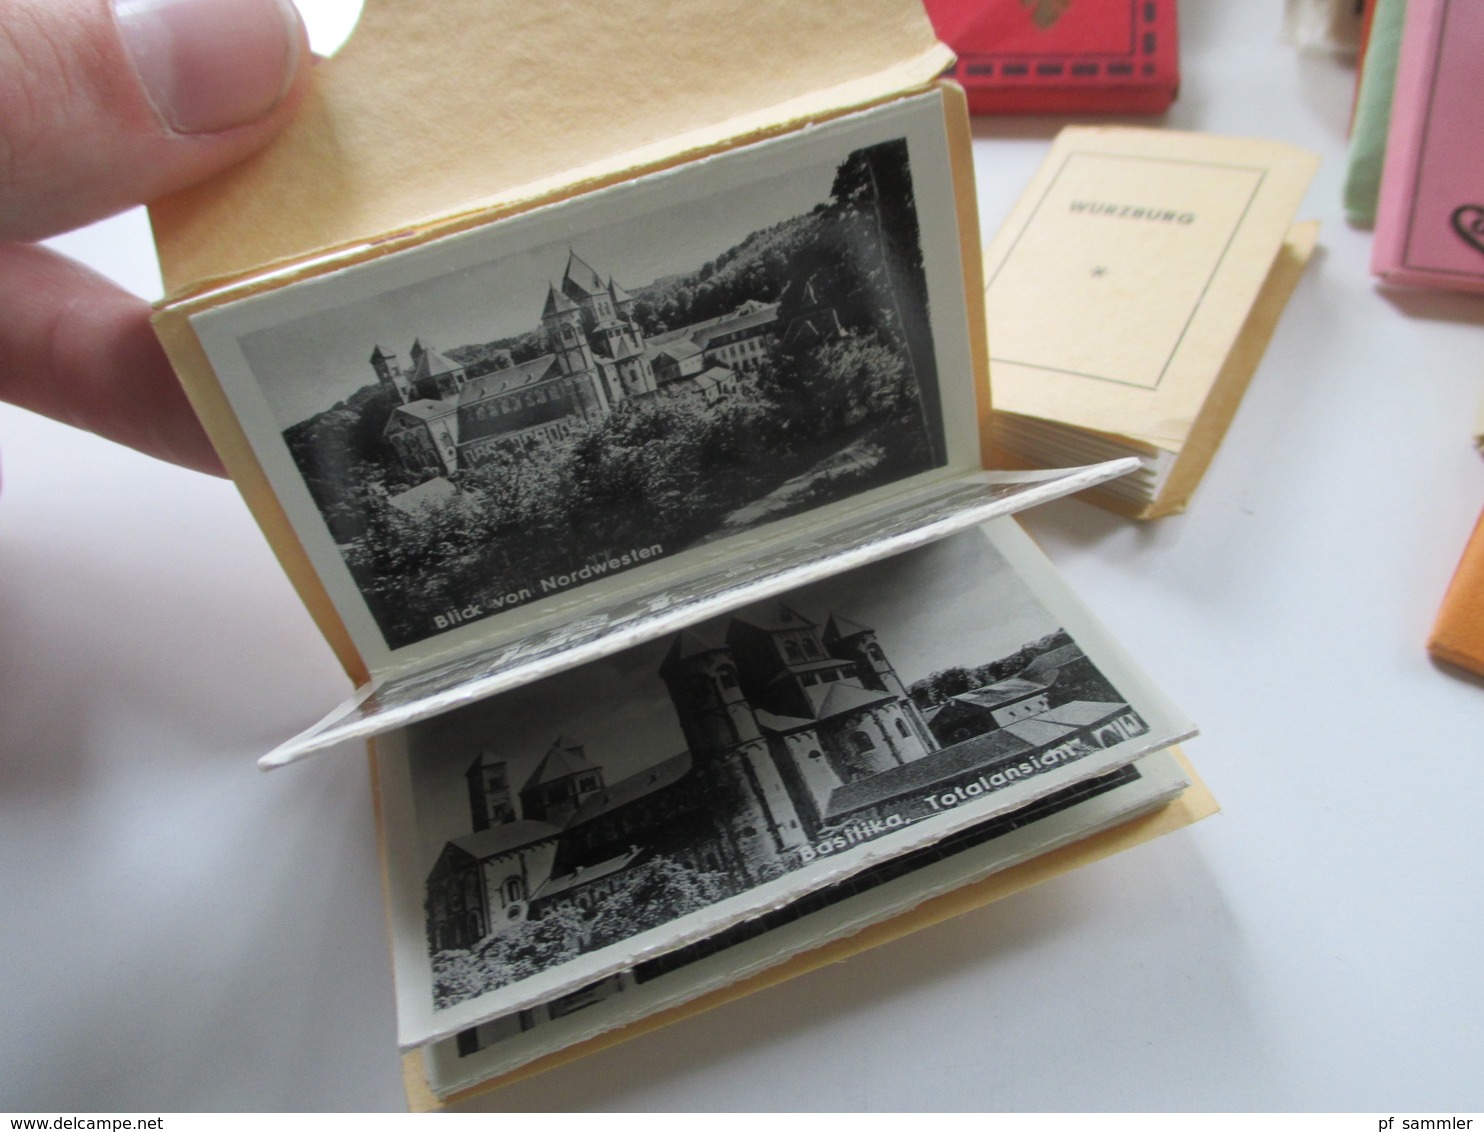 40 Leporellos Kleine Fotos 1940 / 50er Jahre! Deutschland / Italien / Österreich / Luxemburg Usw. Interessanter Posten!! - 100 - 499 Cartoline